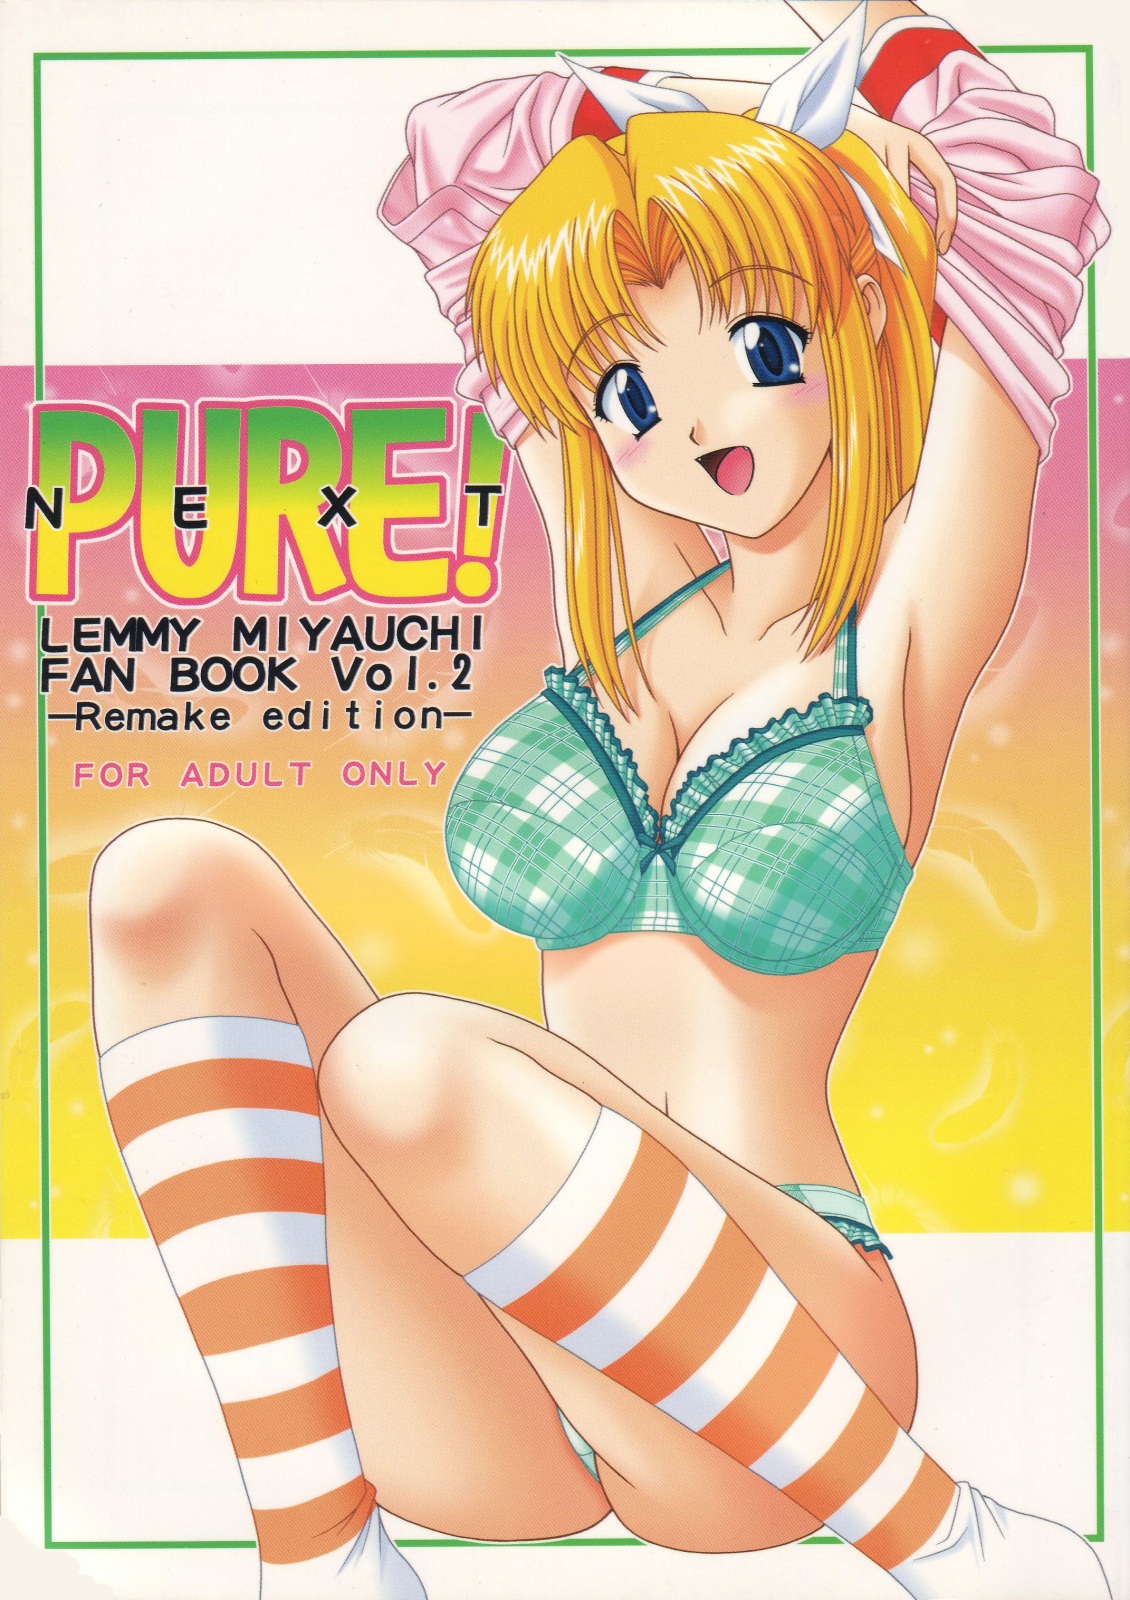 [GEBOKU SHUPPAN (PIN VICE)] Pure! Next Lemmy Miyauchi Fan Book Vol. 2 (To Heart) [下僕出版 (PIN VICE)] Pure! Next Lemmy Miyauchi Fan Book Vol. 2 (トゥハート)